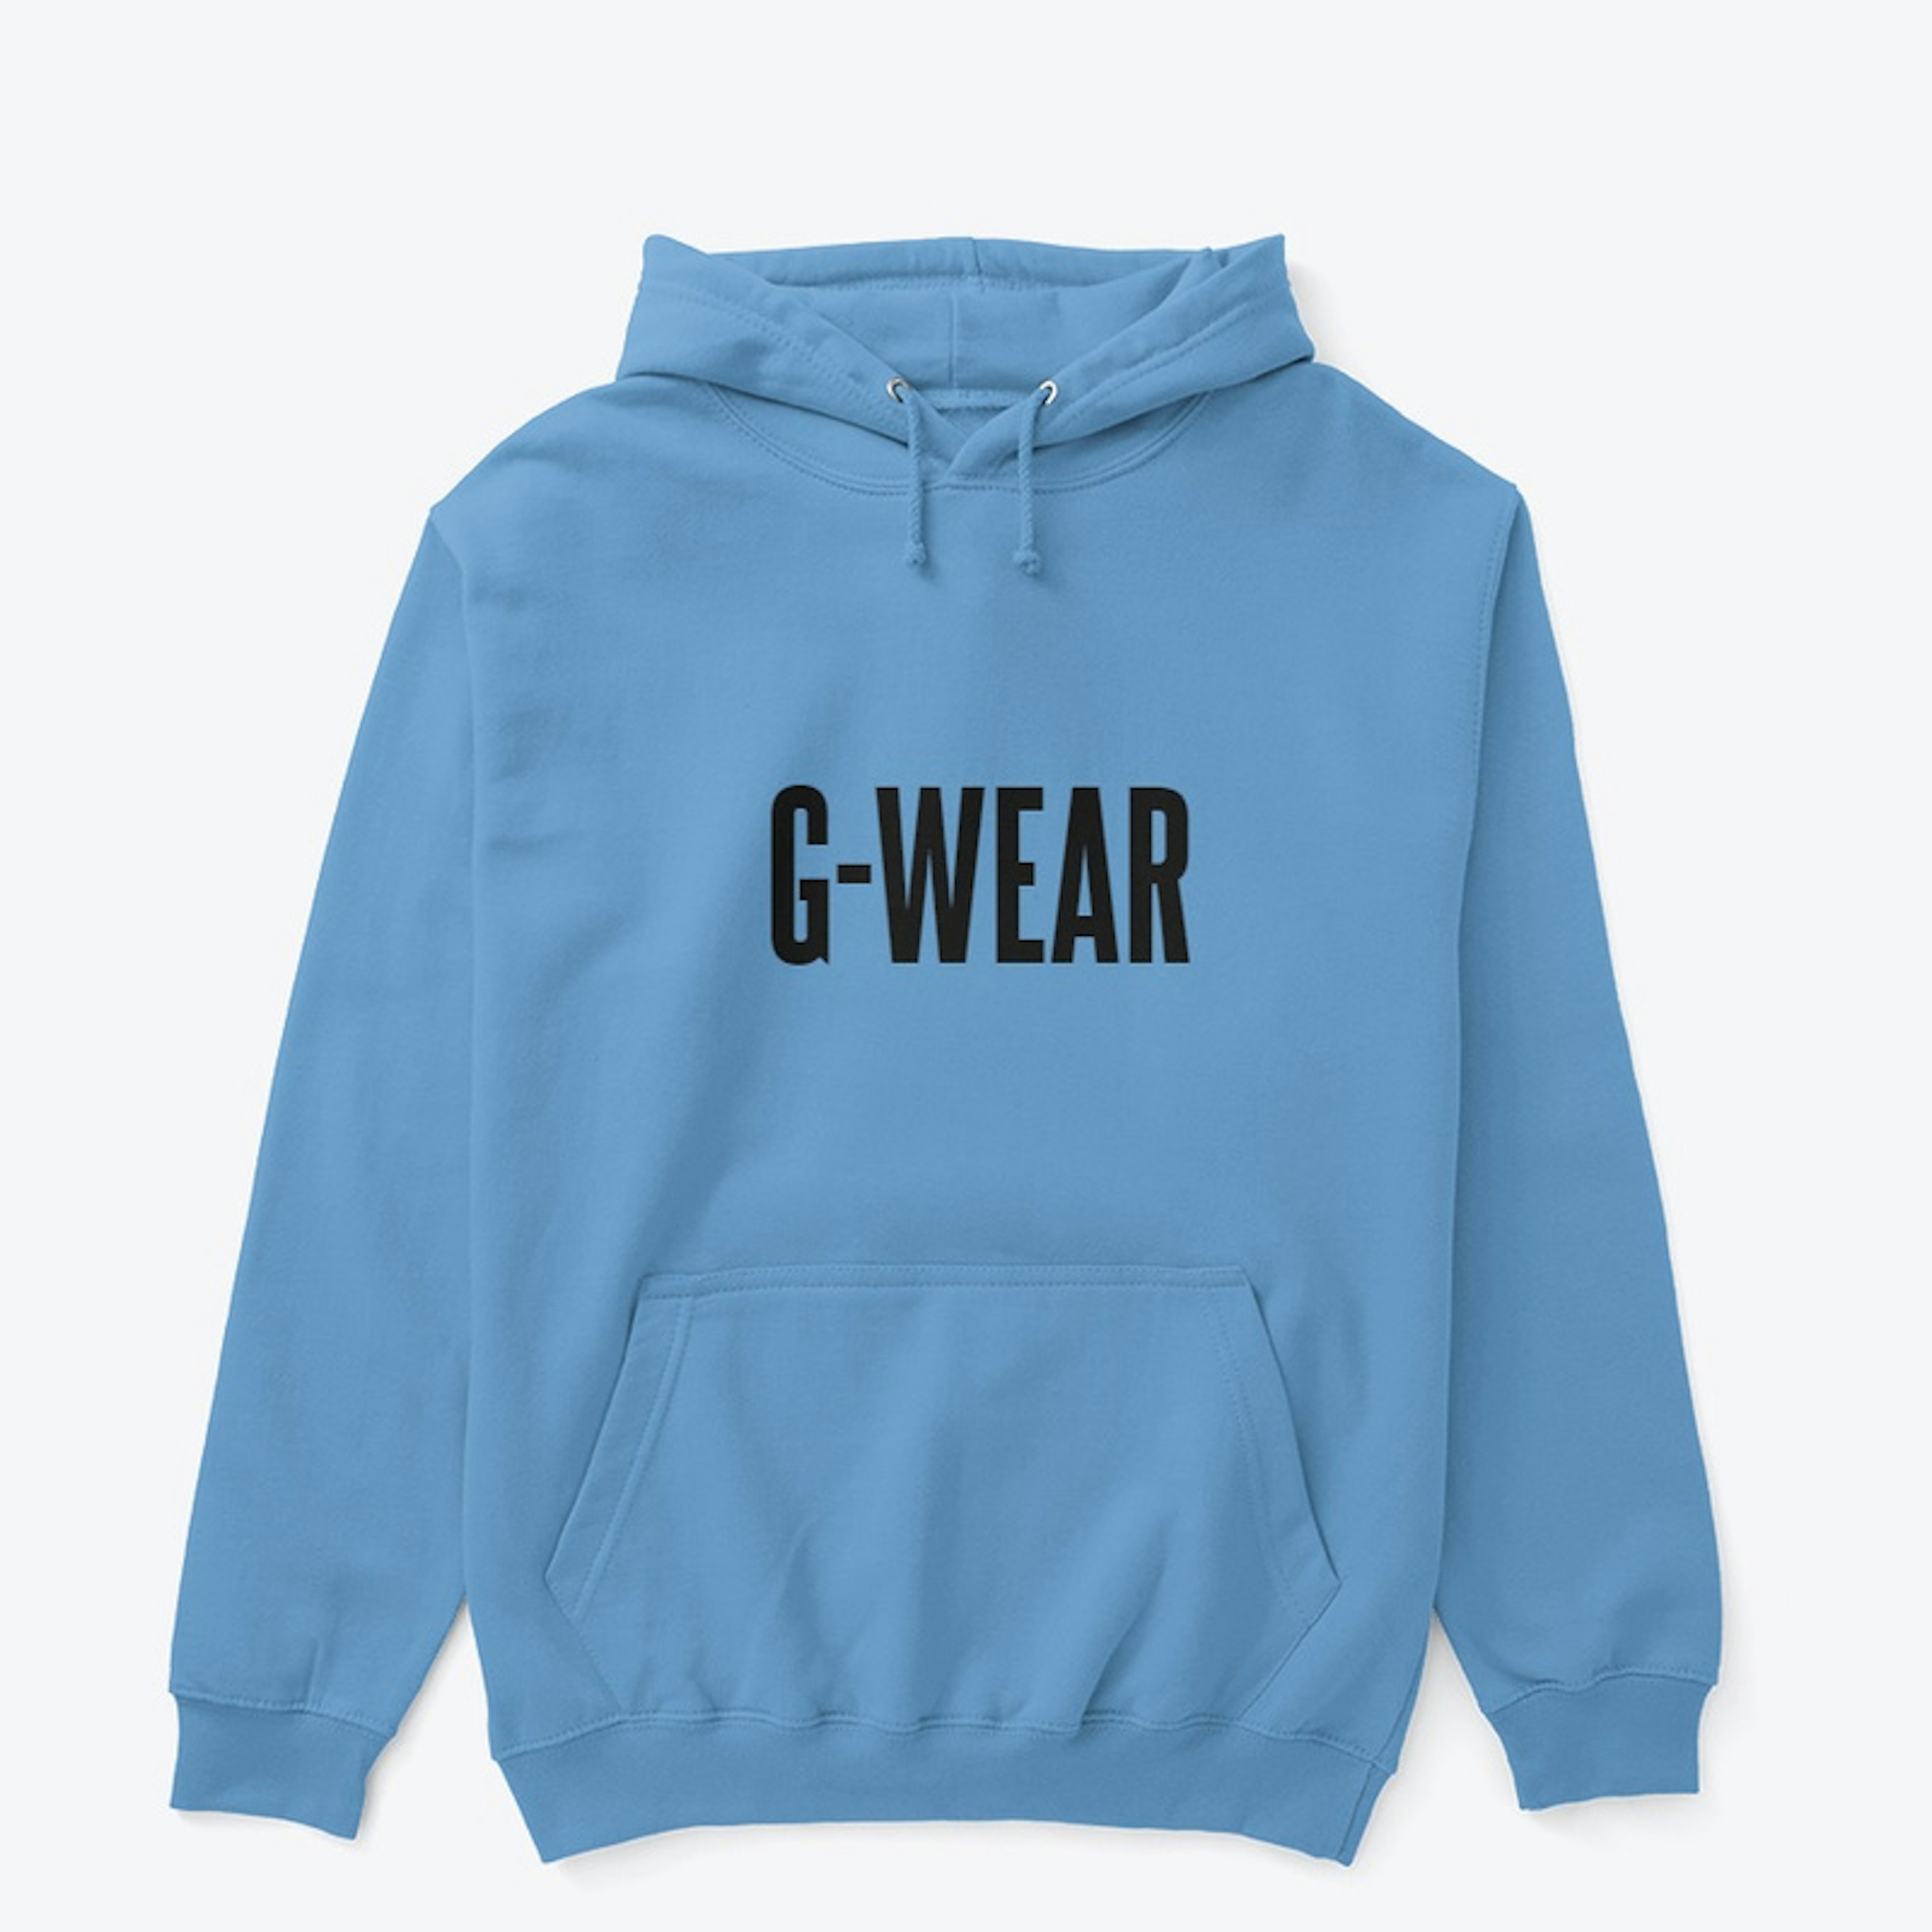 G-Wear